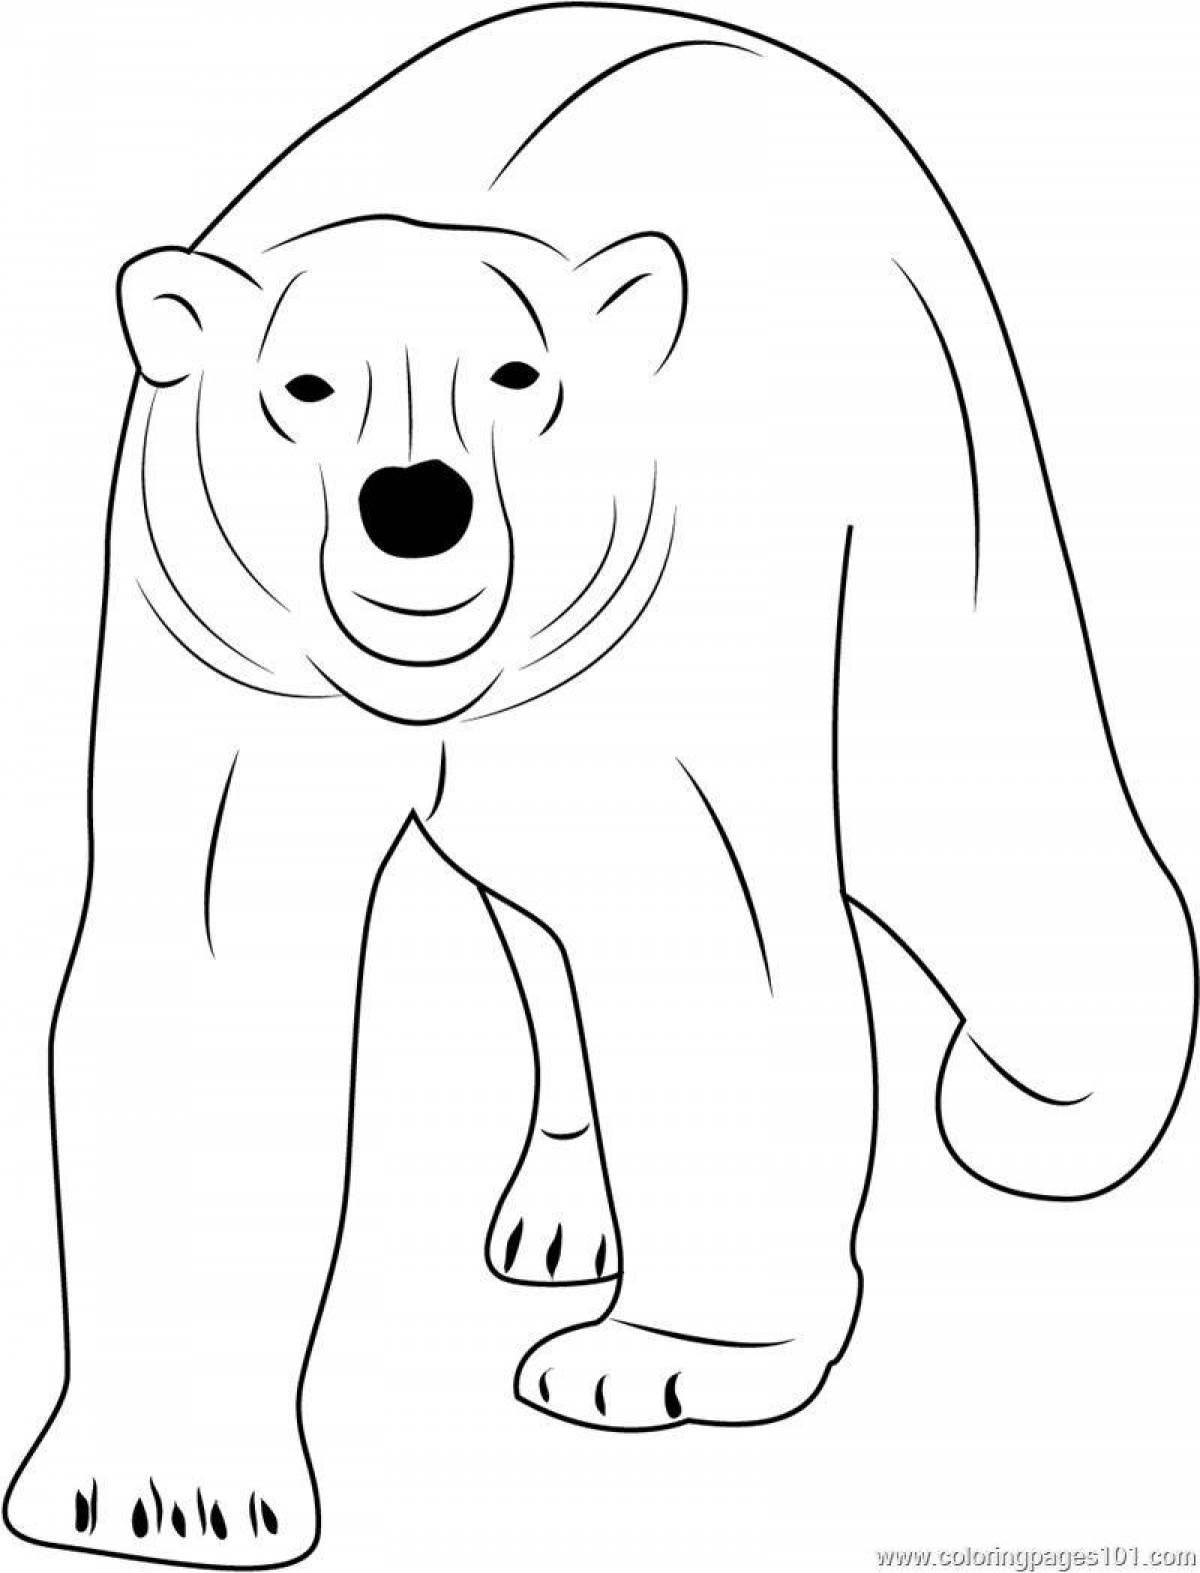 Раскраска озорной белый медведь